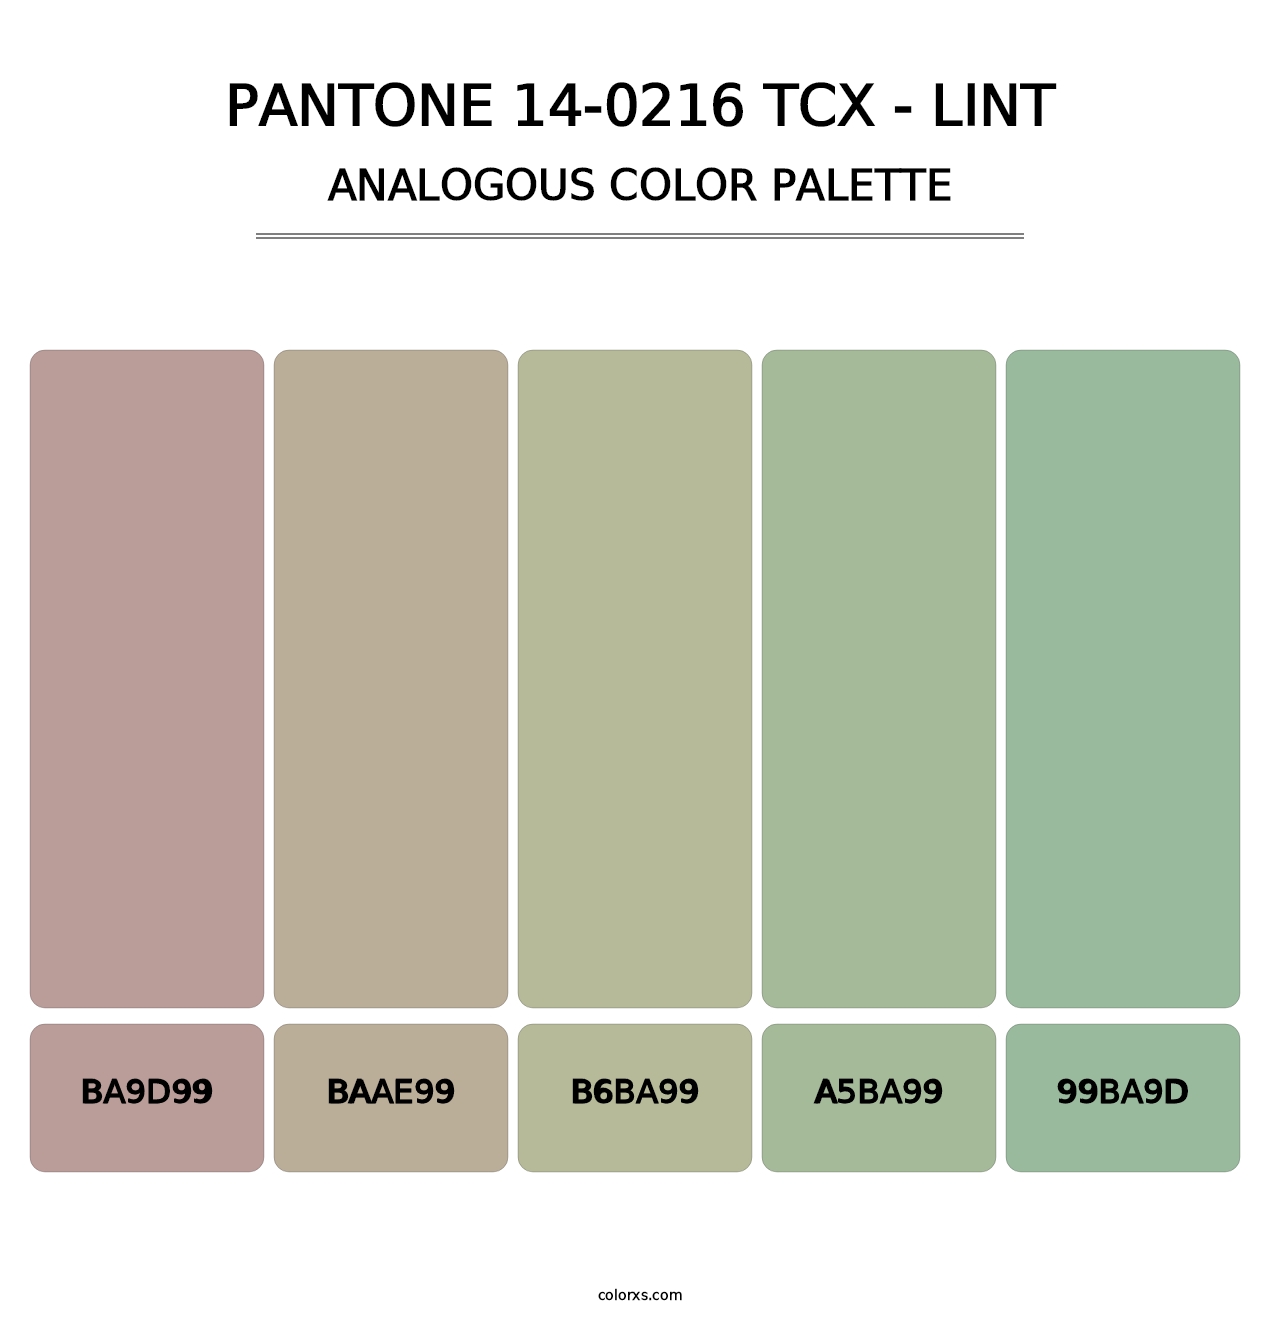 PANTONE 14-0216 TCX - Lint - Analogous Color Palette